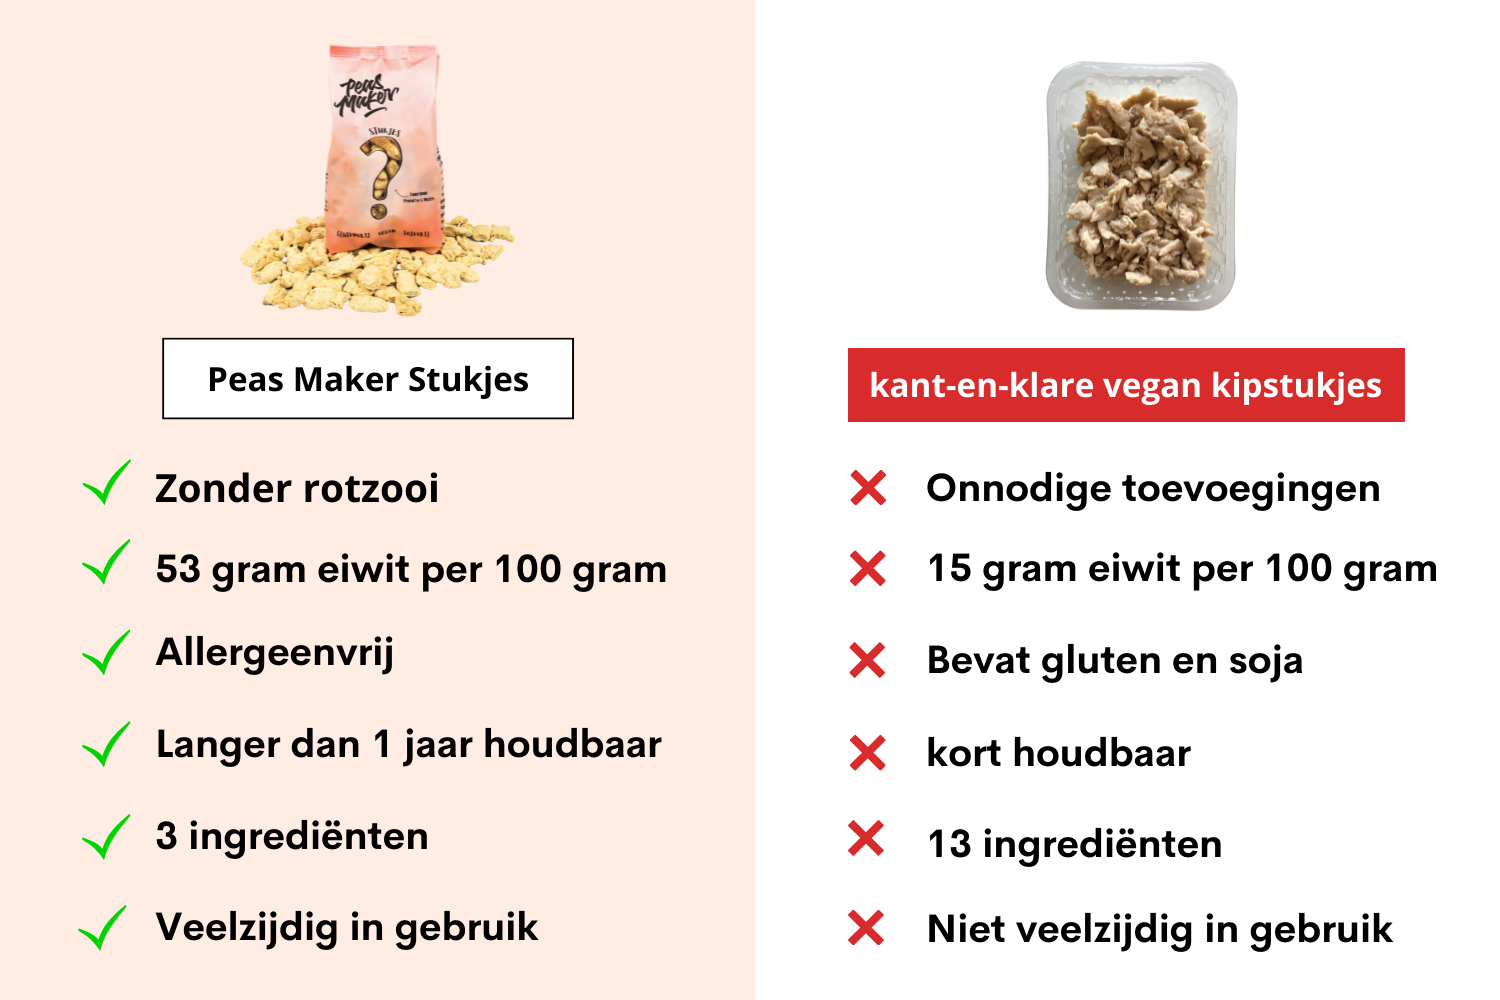 Peas Maker Stukjes vergelijken met kant-en-klare vegan kipstukjes